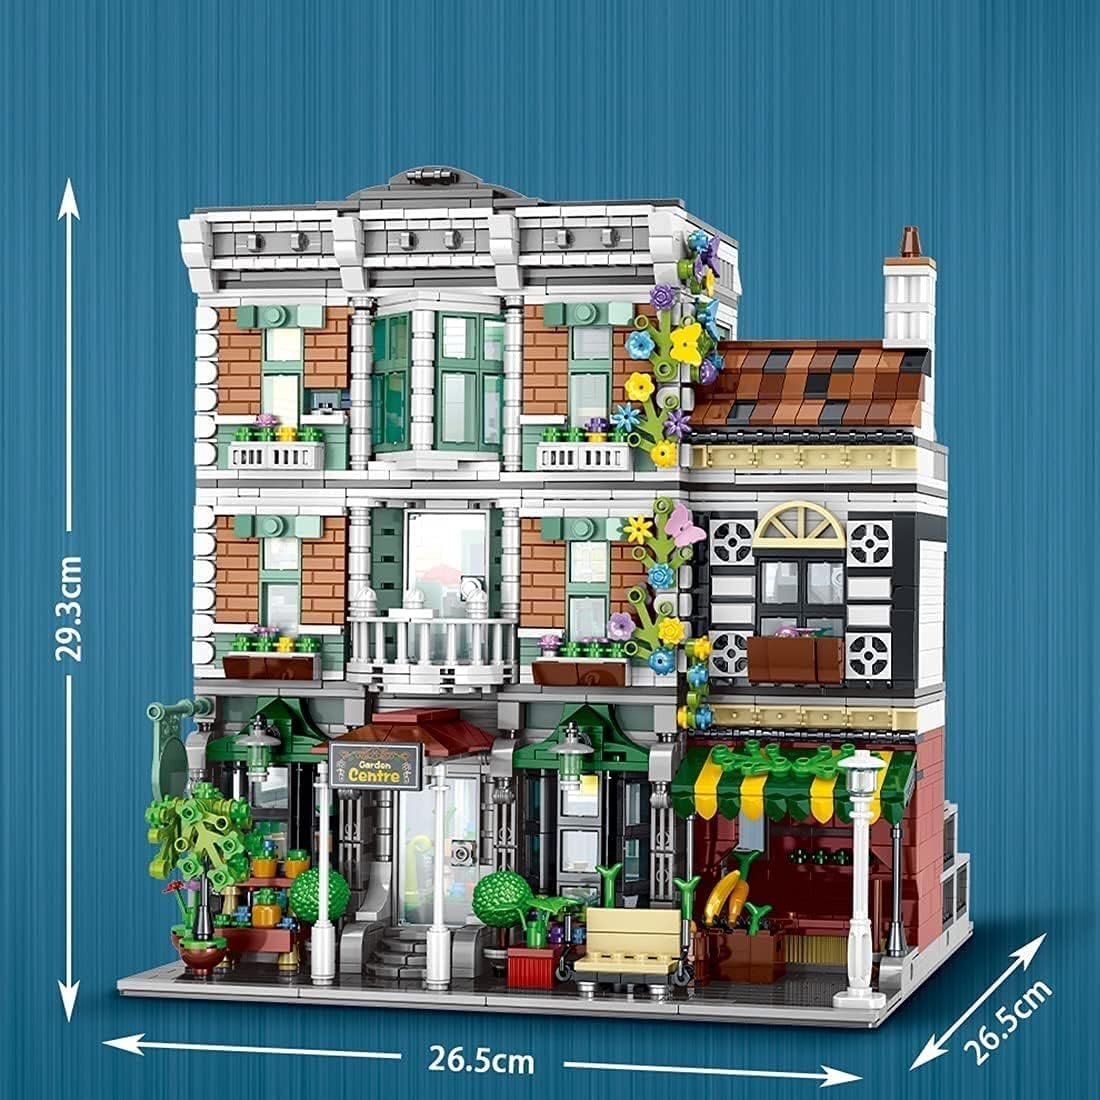  modular house Building комплект,3 слой центральный цветок магазин Europe строительство,3648Pcs Arky tech коричневый модель house комплект, Lego . сменный 